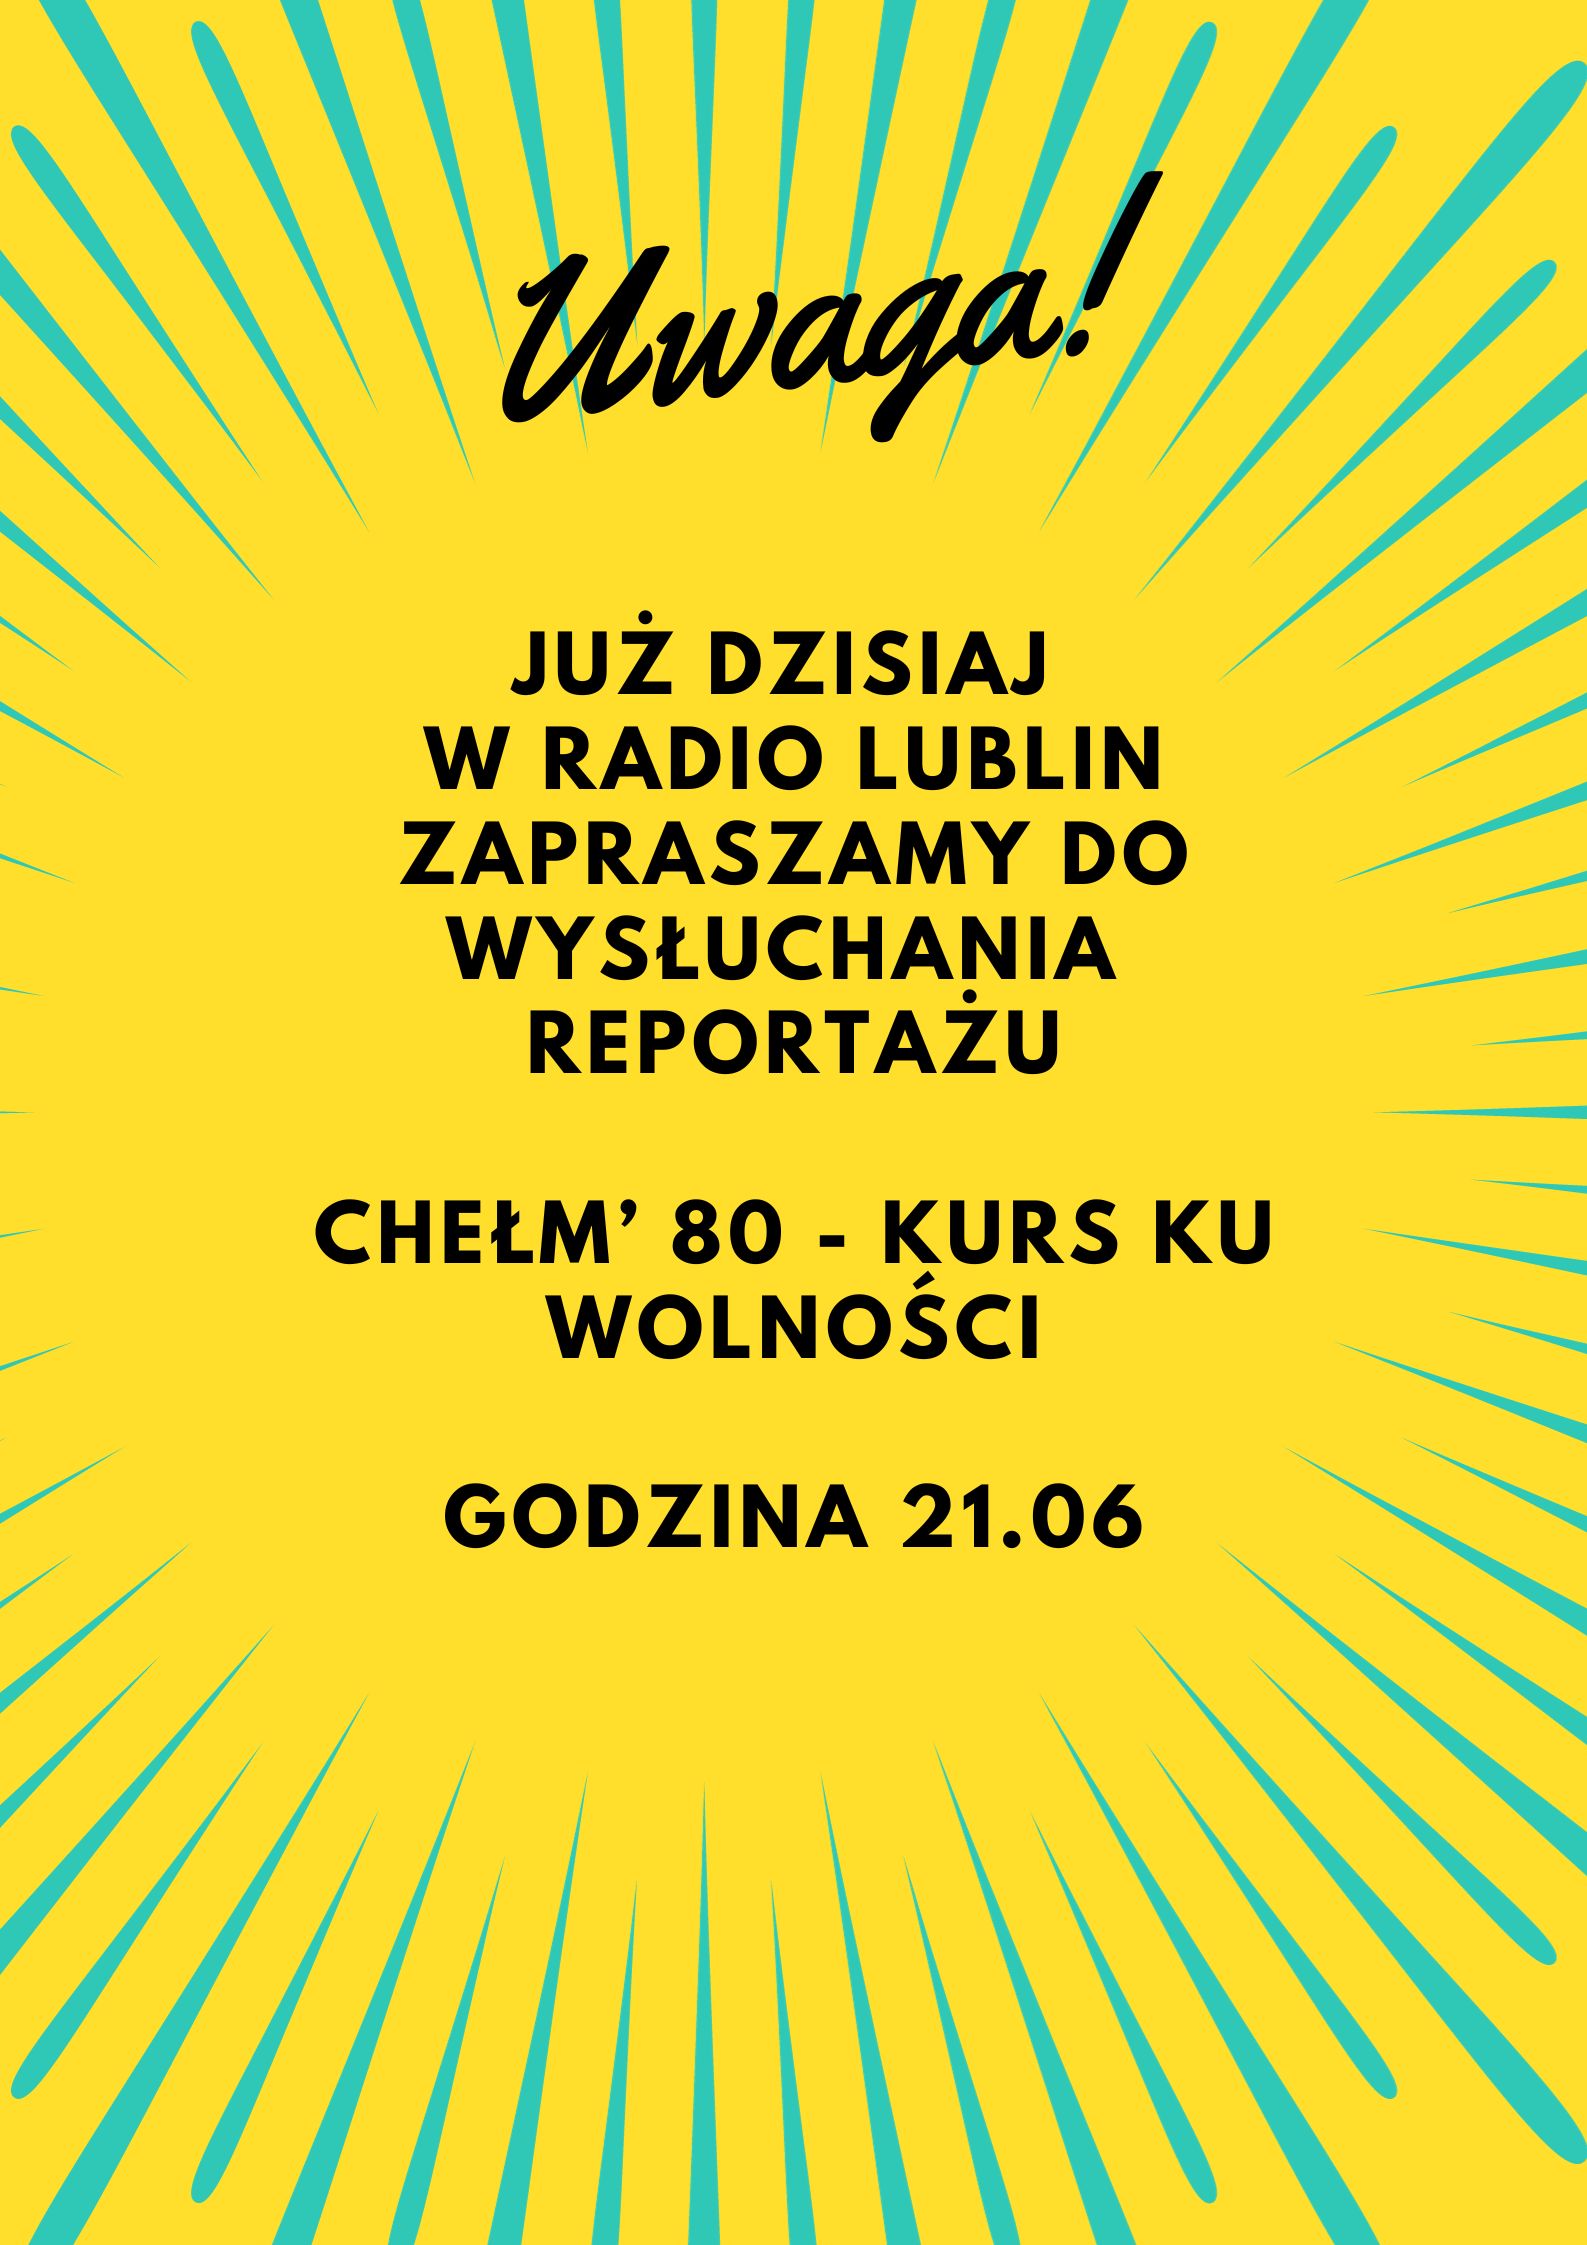 Plakat informujący o audycji w Radio Lublin dotyczący Chełm' 80 - kurs ku wolności